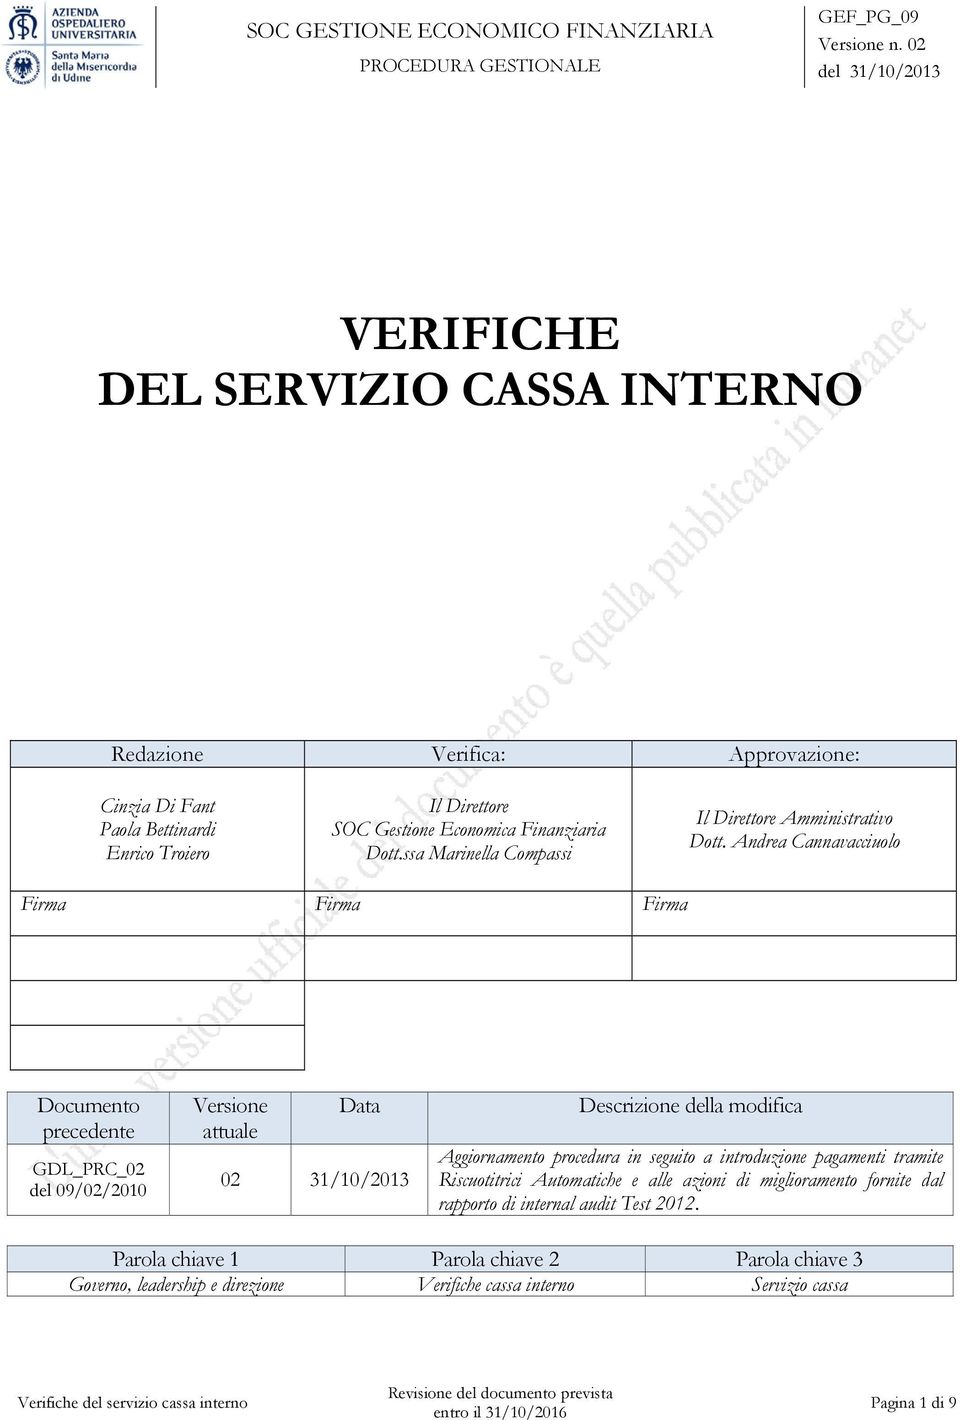 Andrea Cannavacciuolo Firma Firma Firma Documento precedente GDL_PC_02 del 09/02/2010 Versione attuale Data 02 31/10/2013 Descrizione della modifica Aggiornamento procedura in seguito a